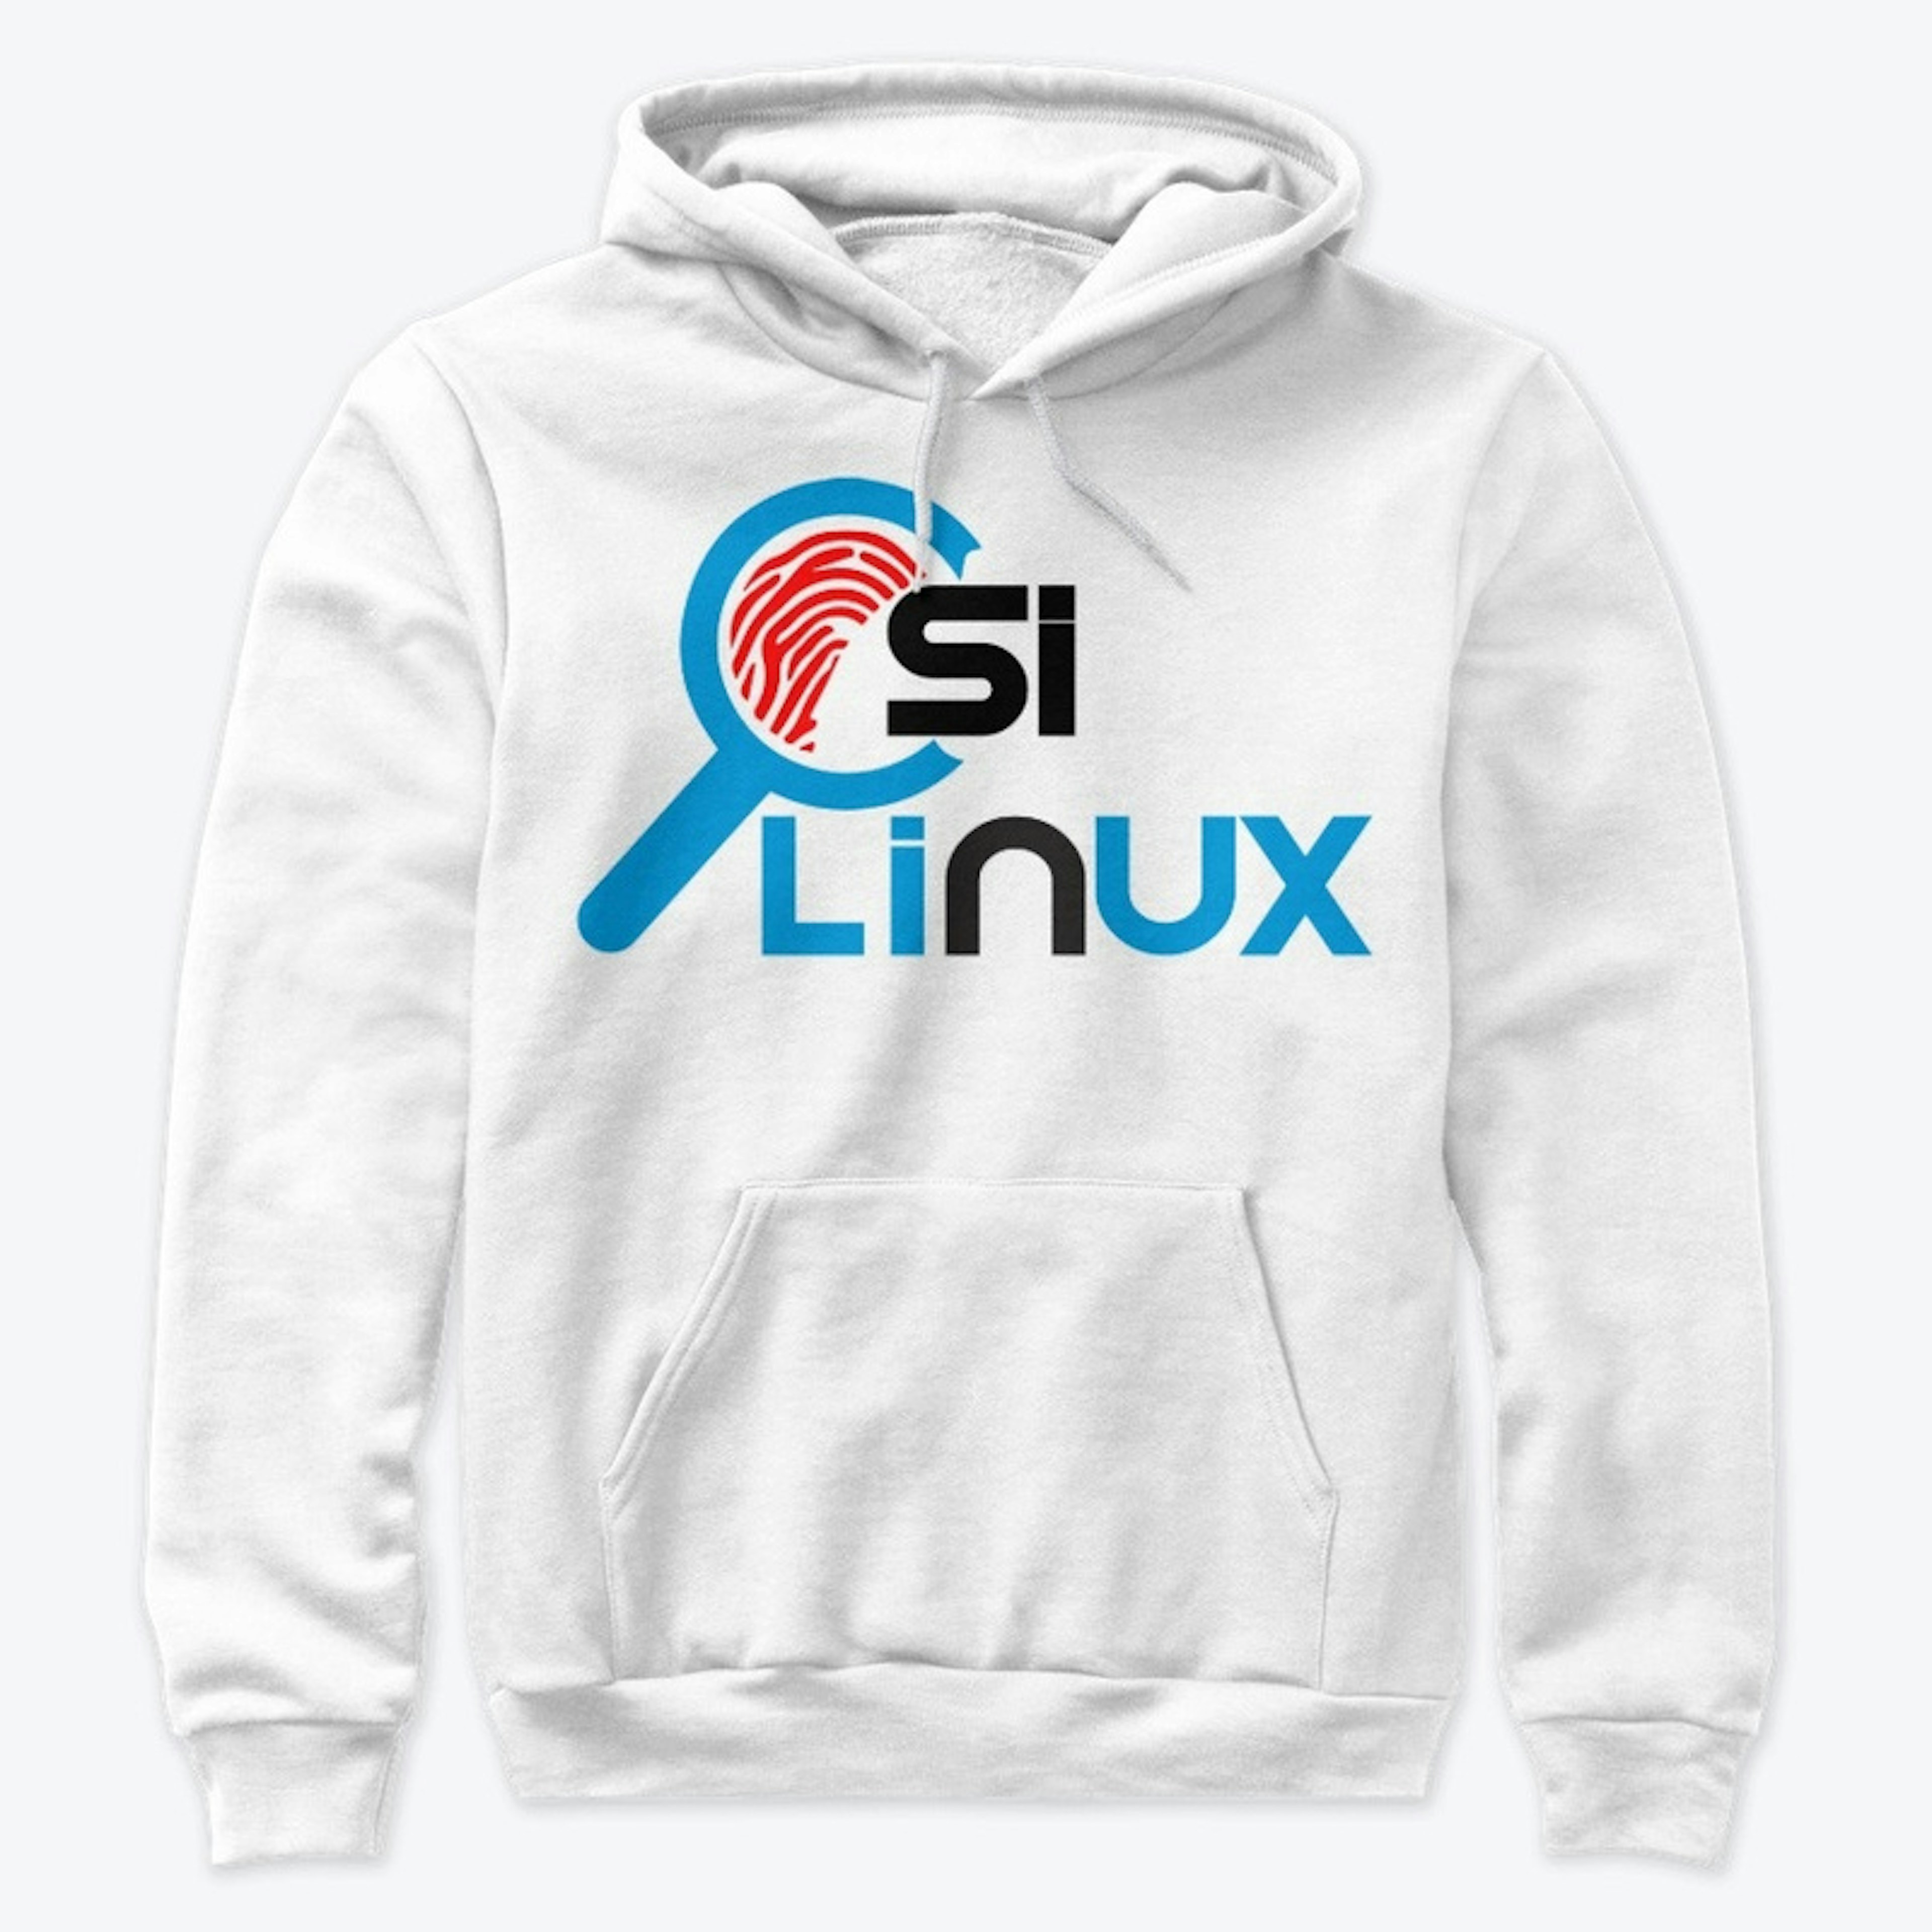 CSI Linux 2